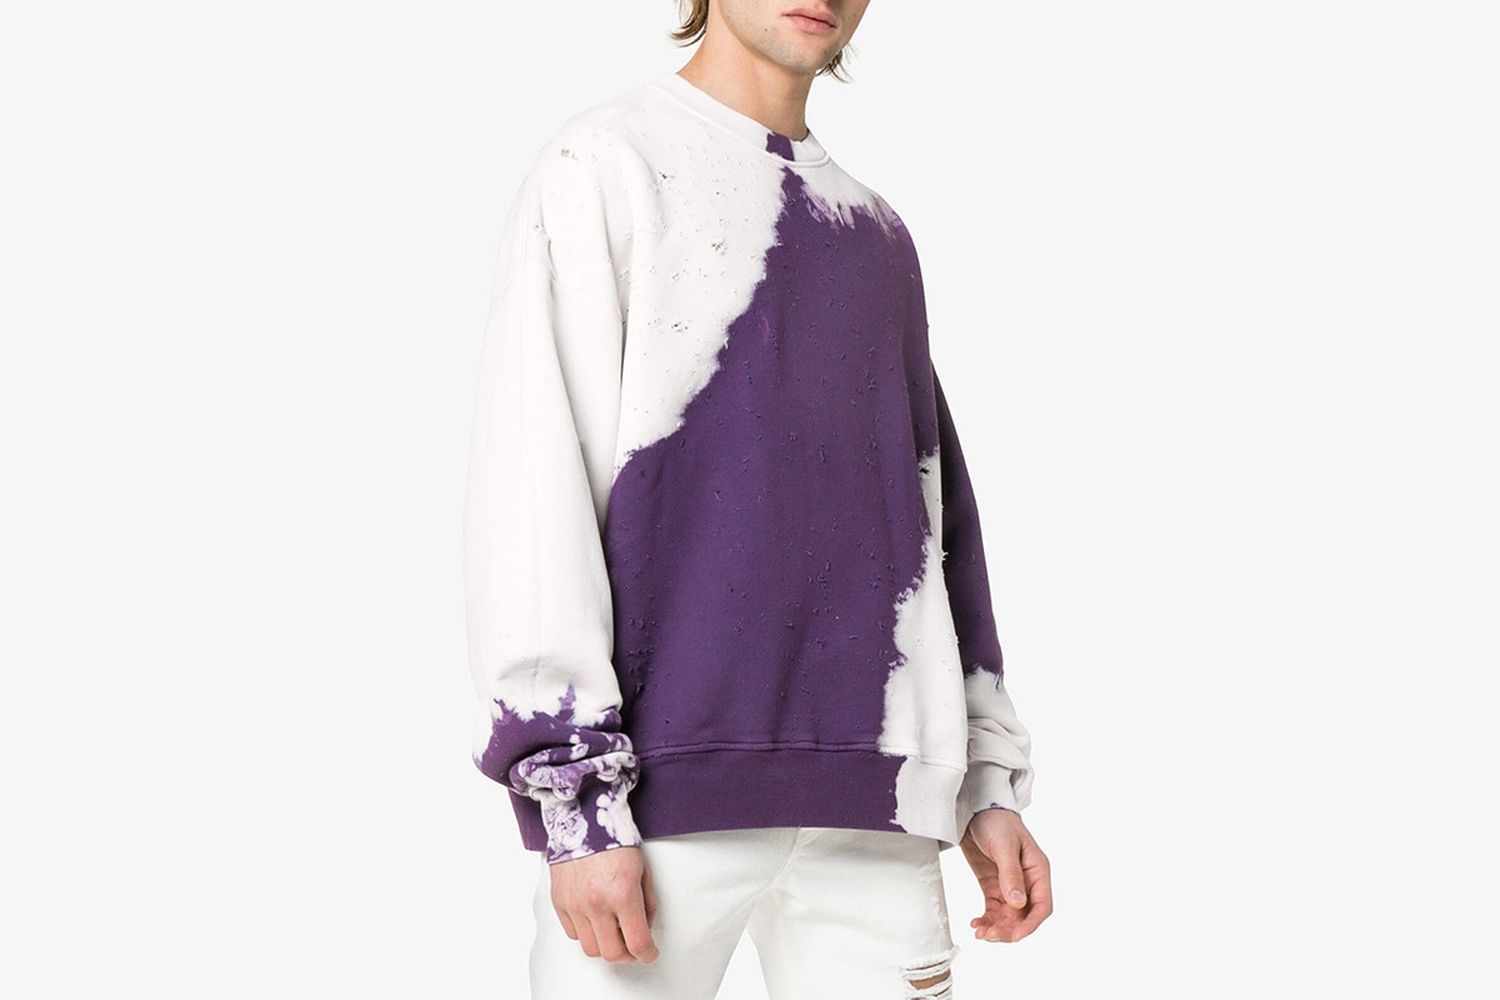 Shotgun tie-dye distressed cotton sweatshirt